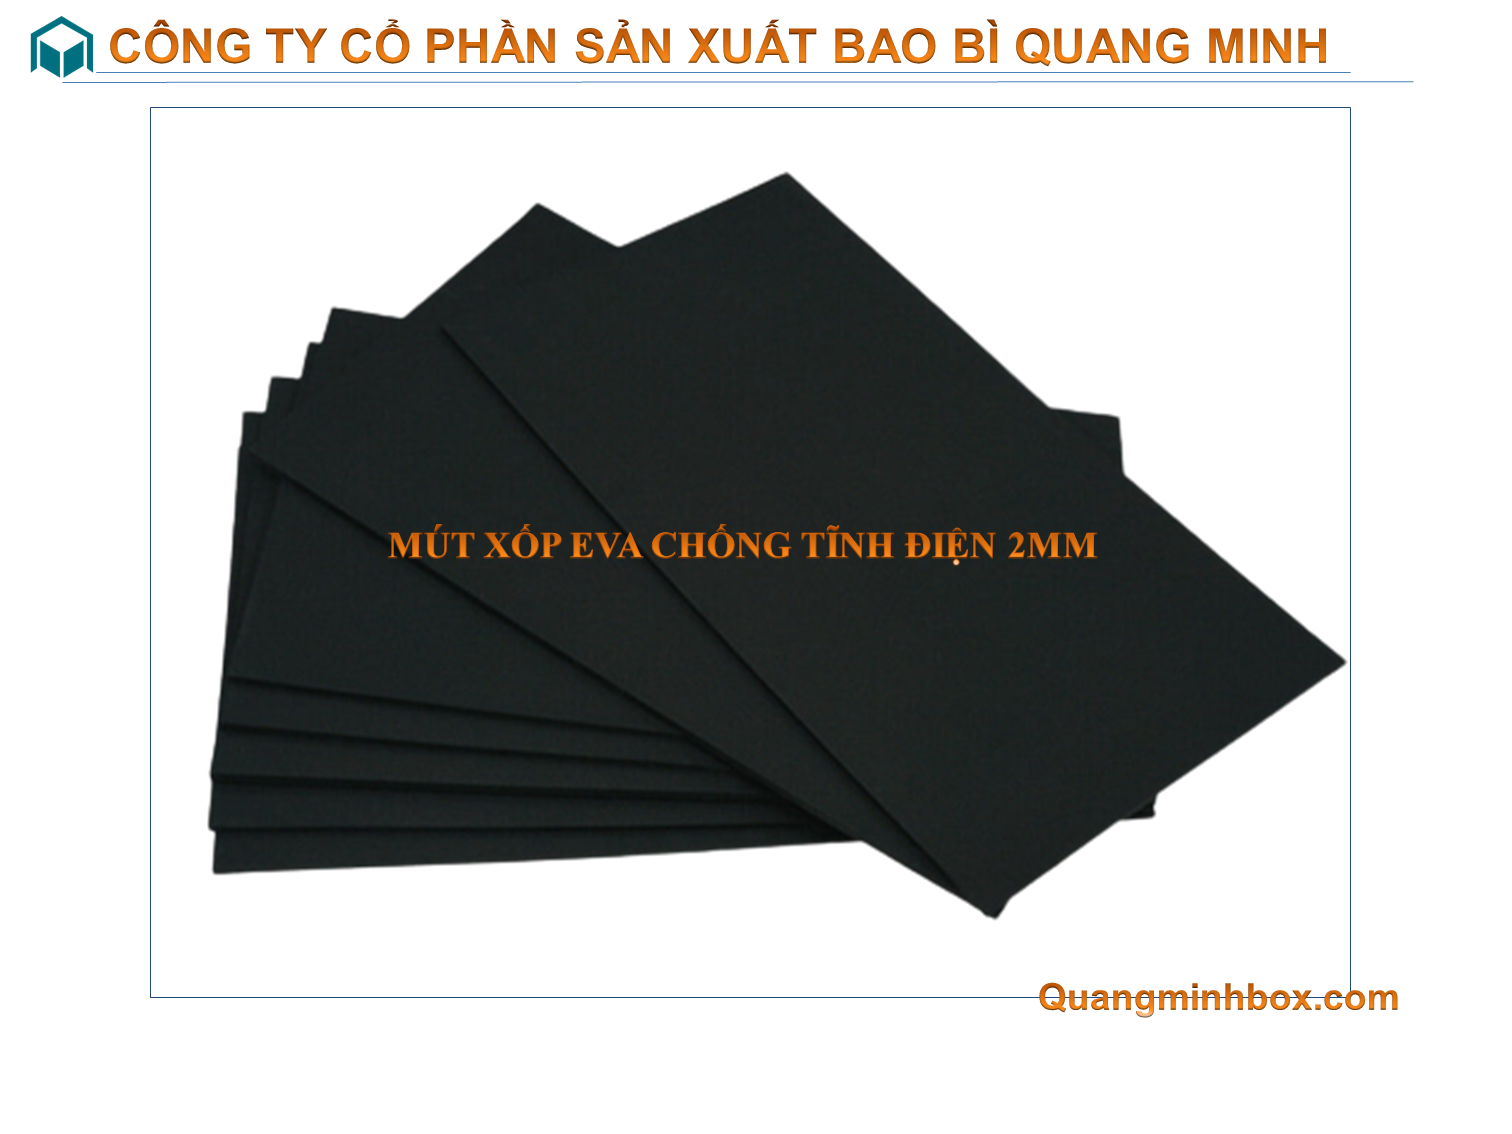 mut-xop-eva-chong-tinh-dien-2mm